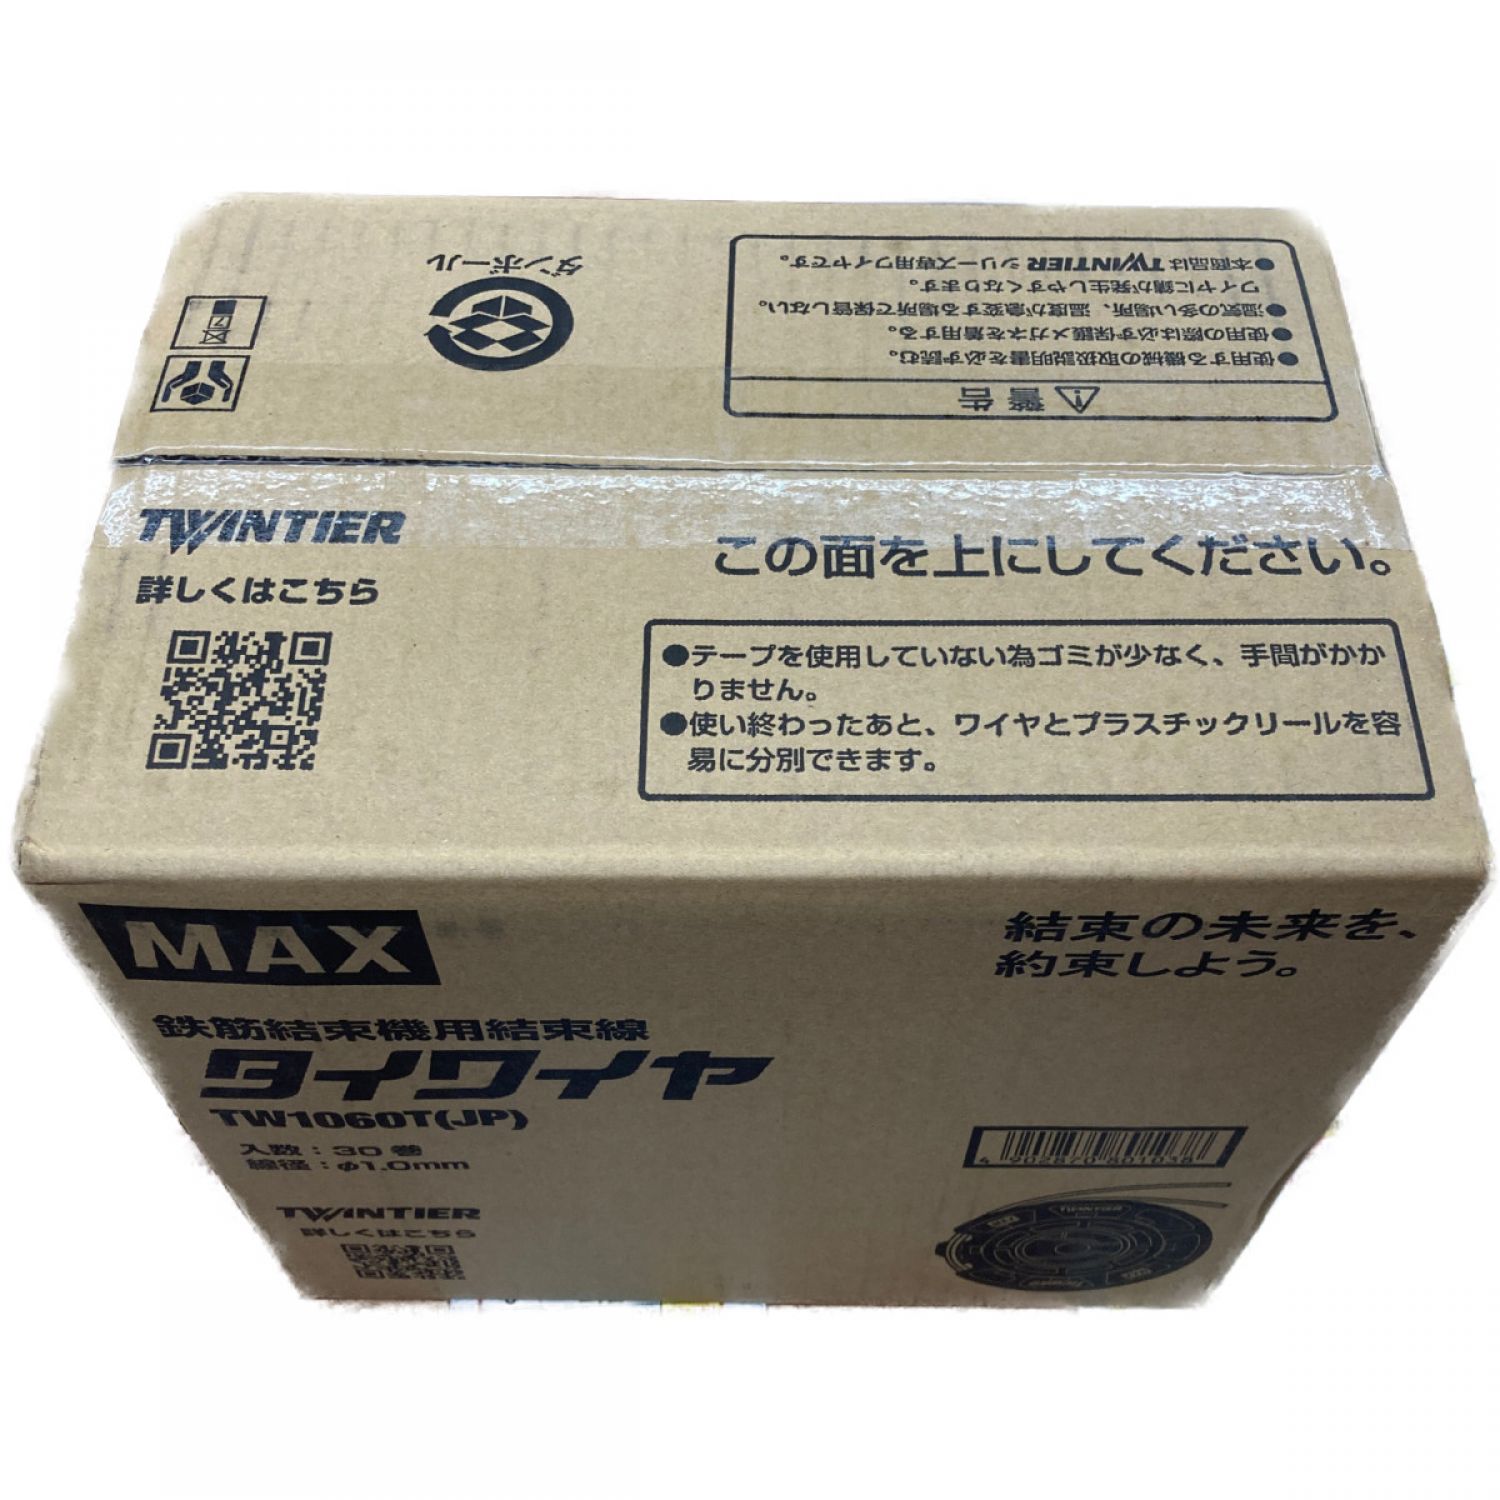 ☆未使用☆ MAX マックス タイワイヤ 30巻セット TW1060T(JP) 鉄筋結束機用結束線 リバータイヤ TW90600 62123